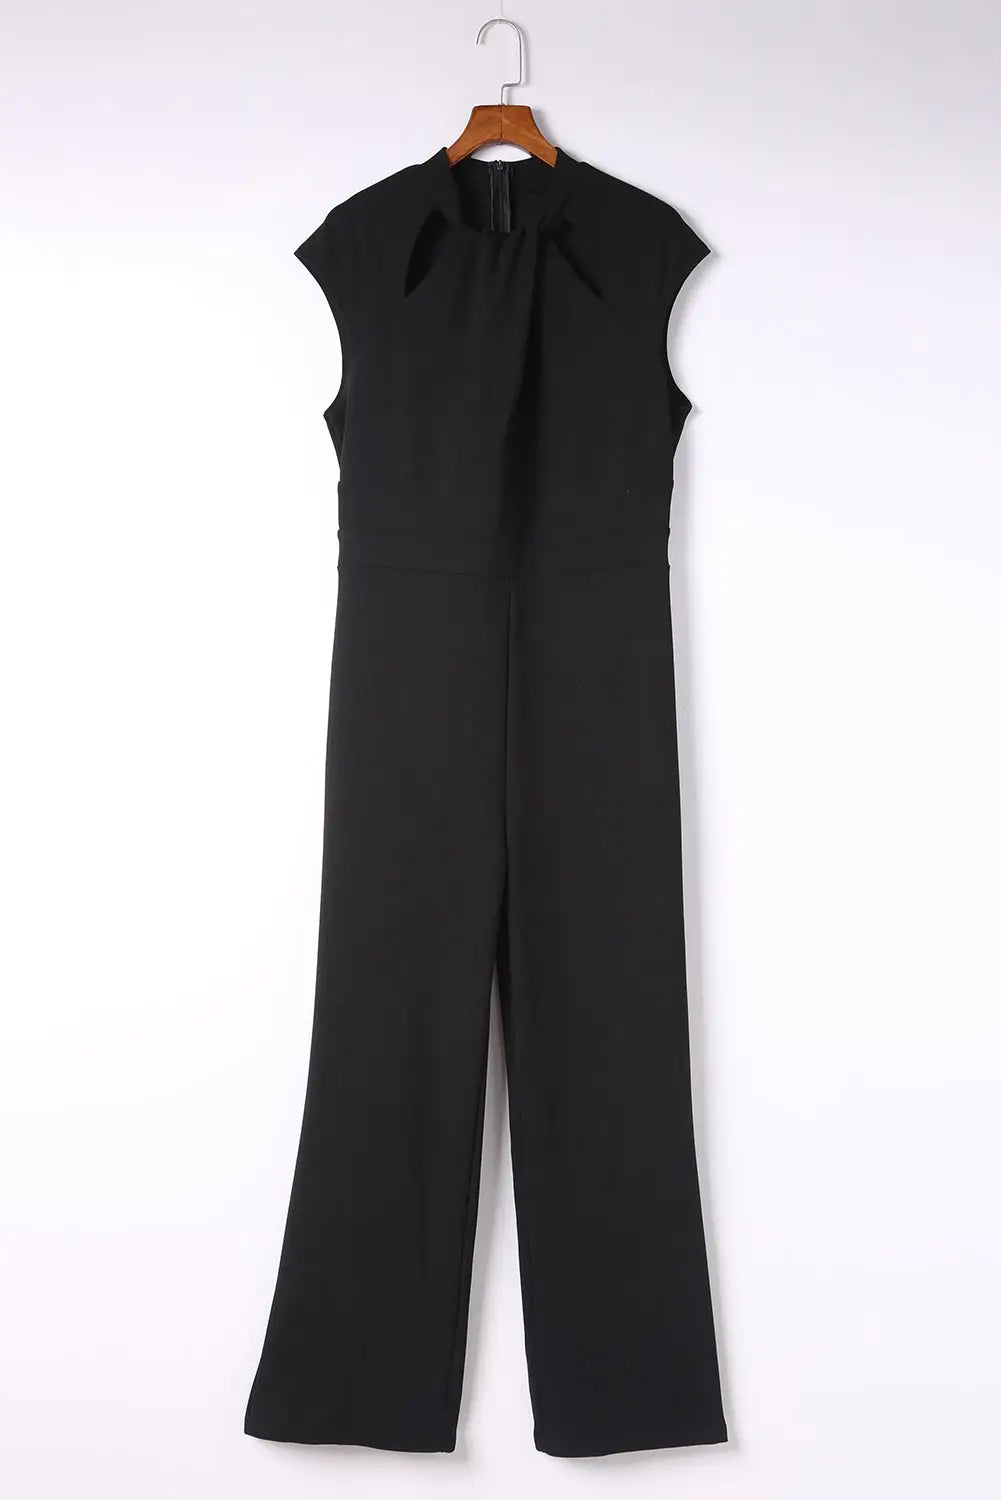 Black cut out neckline cap sleeve high waist jumpsuit - jumpsuits & rompers